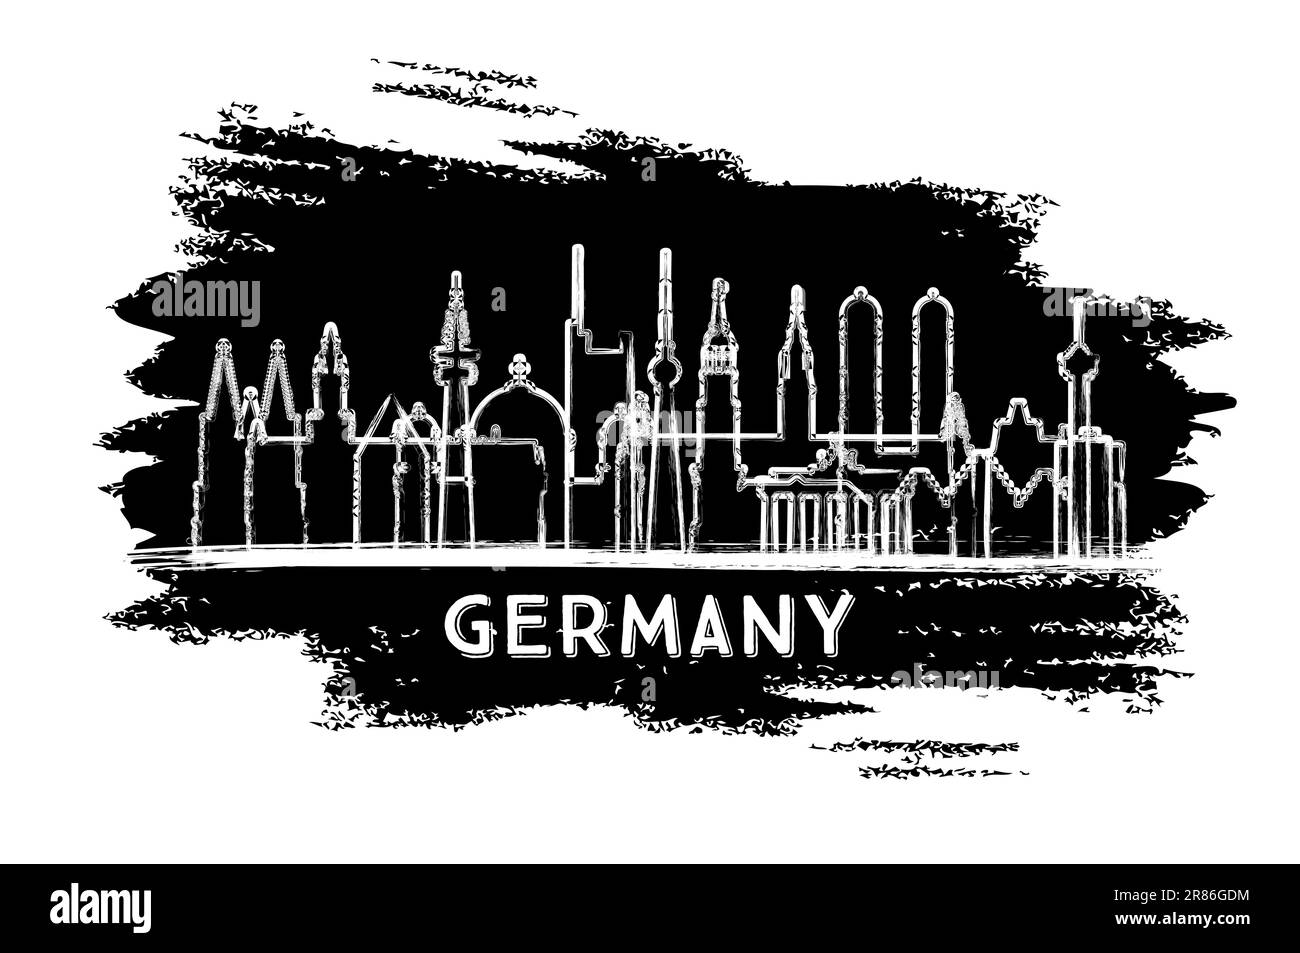 Silhouette Der Deutschen Skyline. Handgezeichnete Skizze. Business Travel and Tourism Concept mit moderner Architektur. Vektordarstellung. Stock Vektor